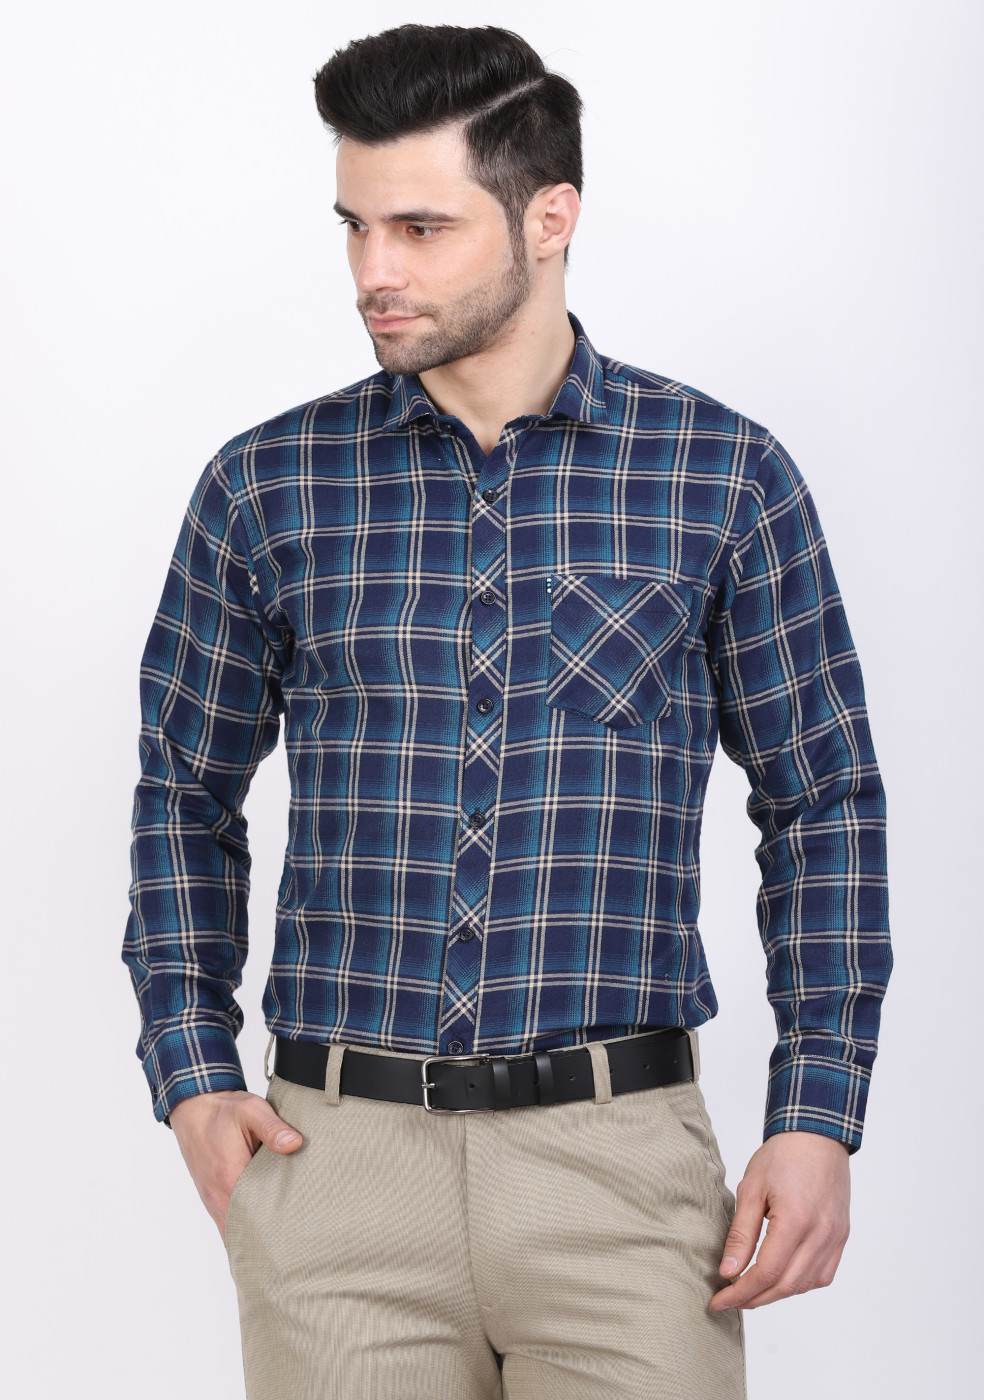 ASHTOM Green & Blue Check Shirt For Men